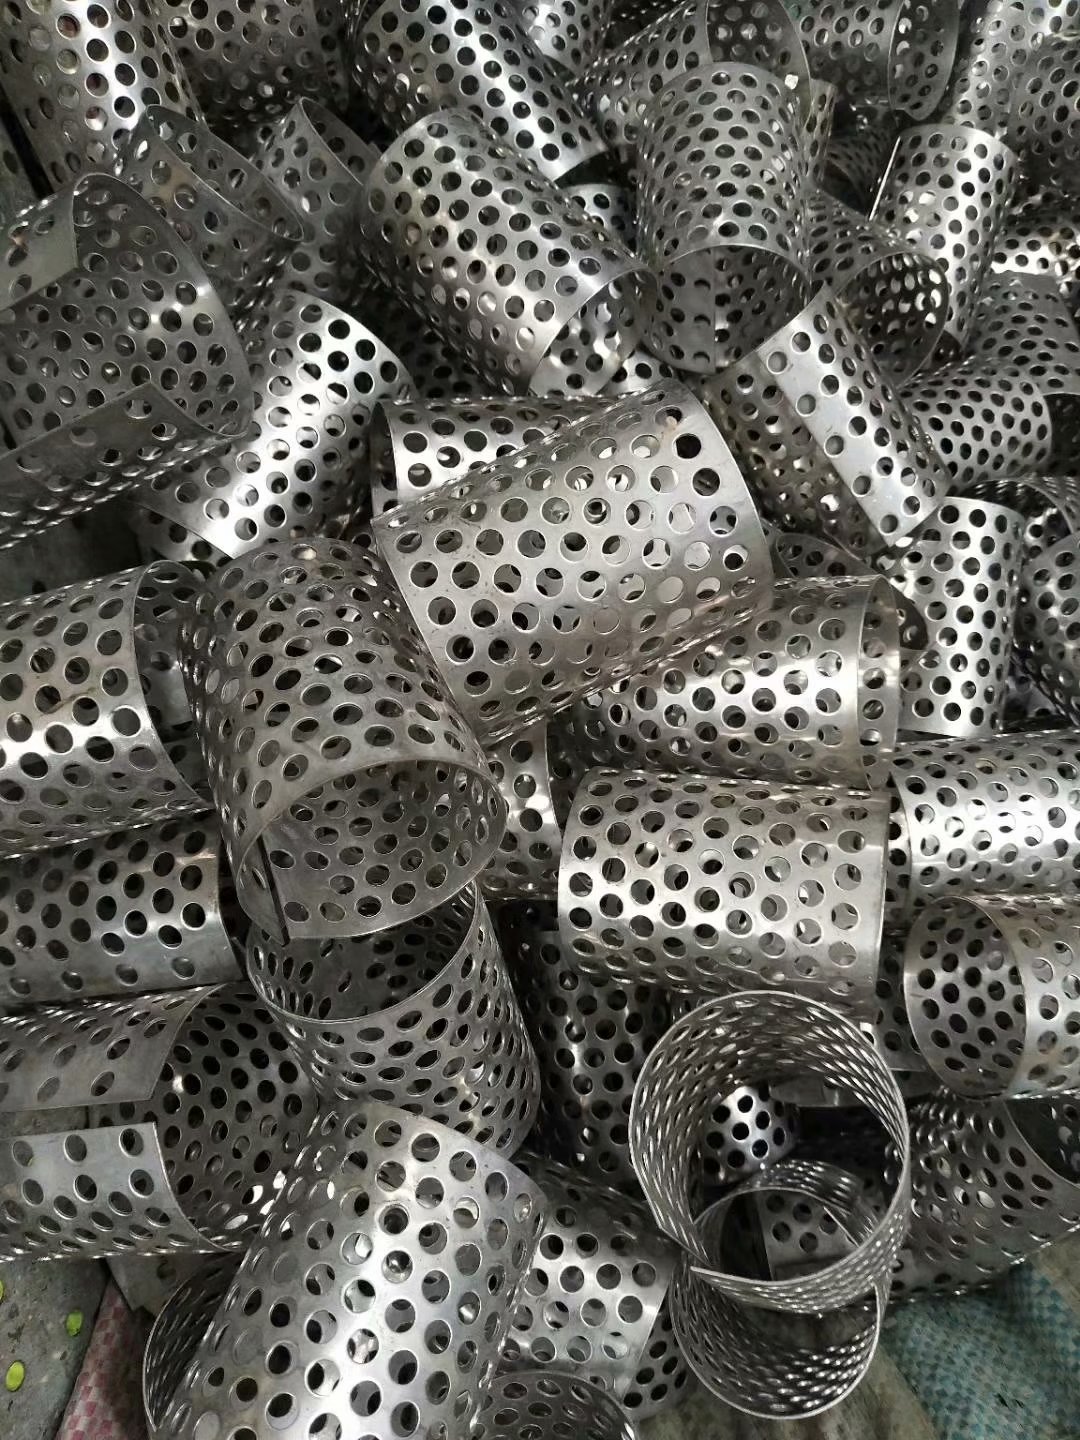 厂家生产过滤筒不锈钢冲孔板网  双层冲孔网过滤筒  管道过滤器筛网纱网